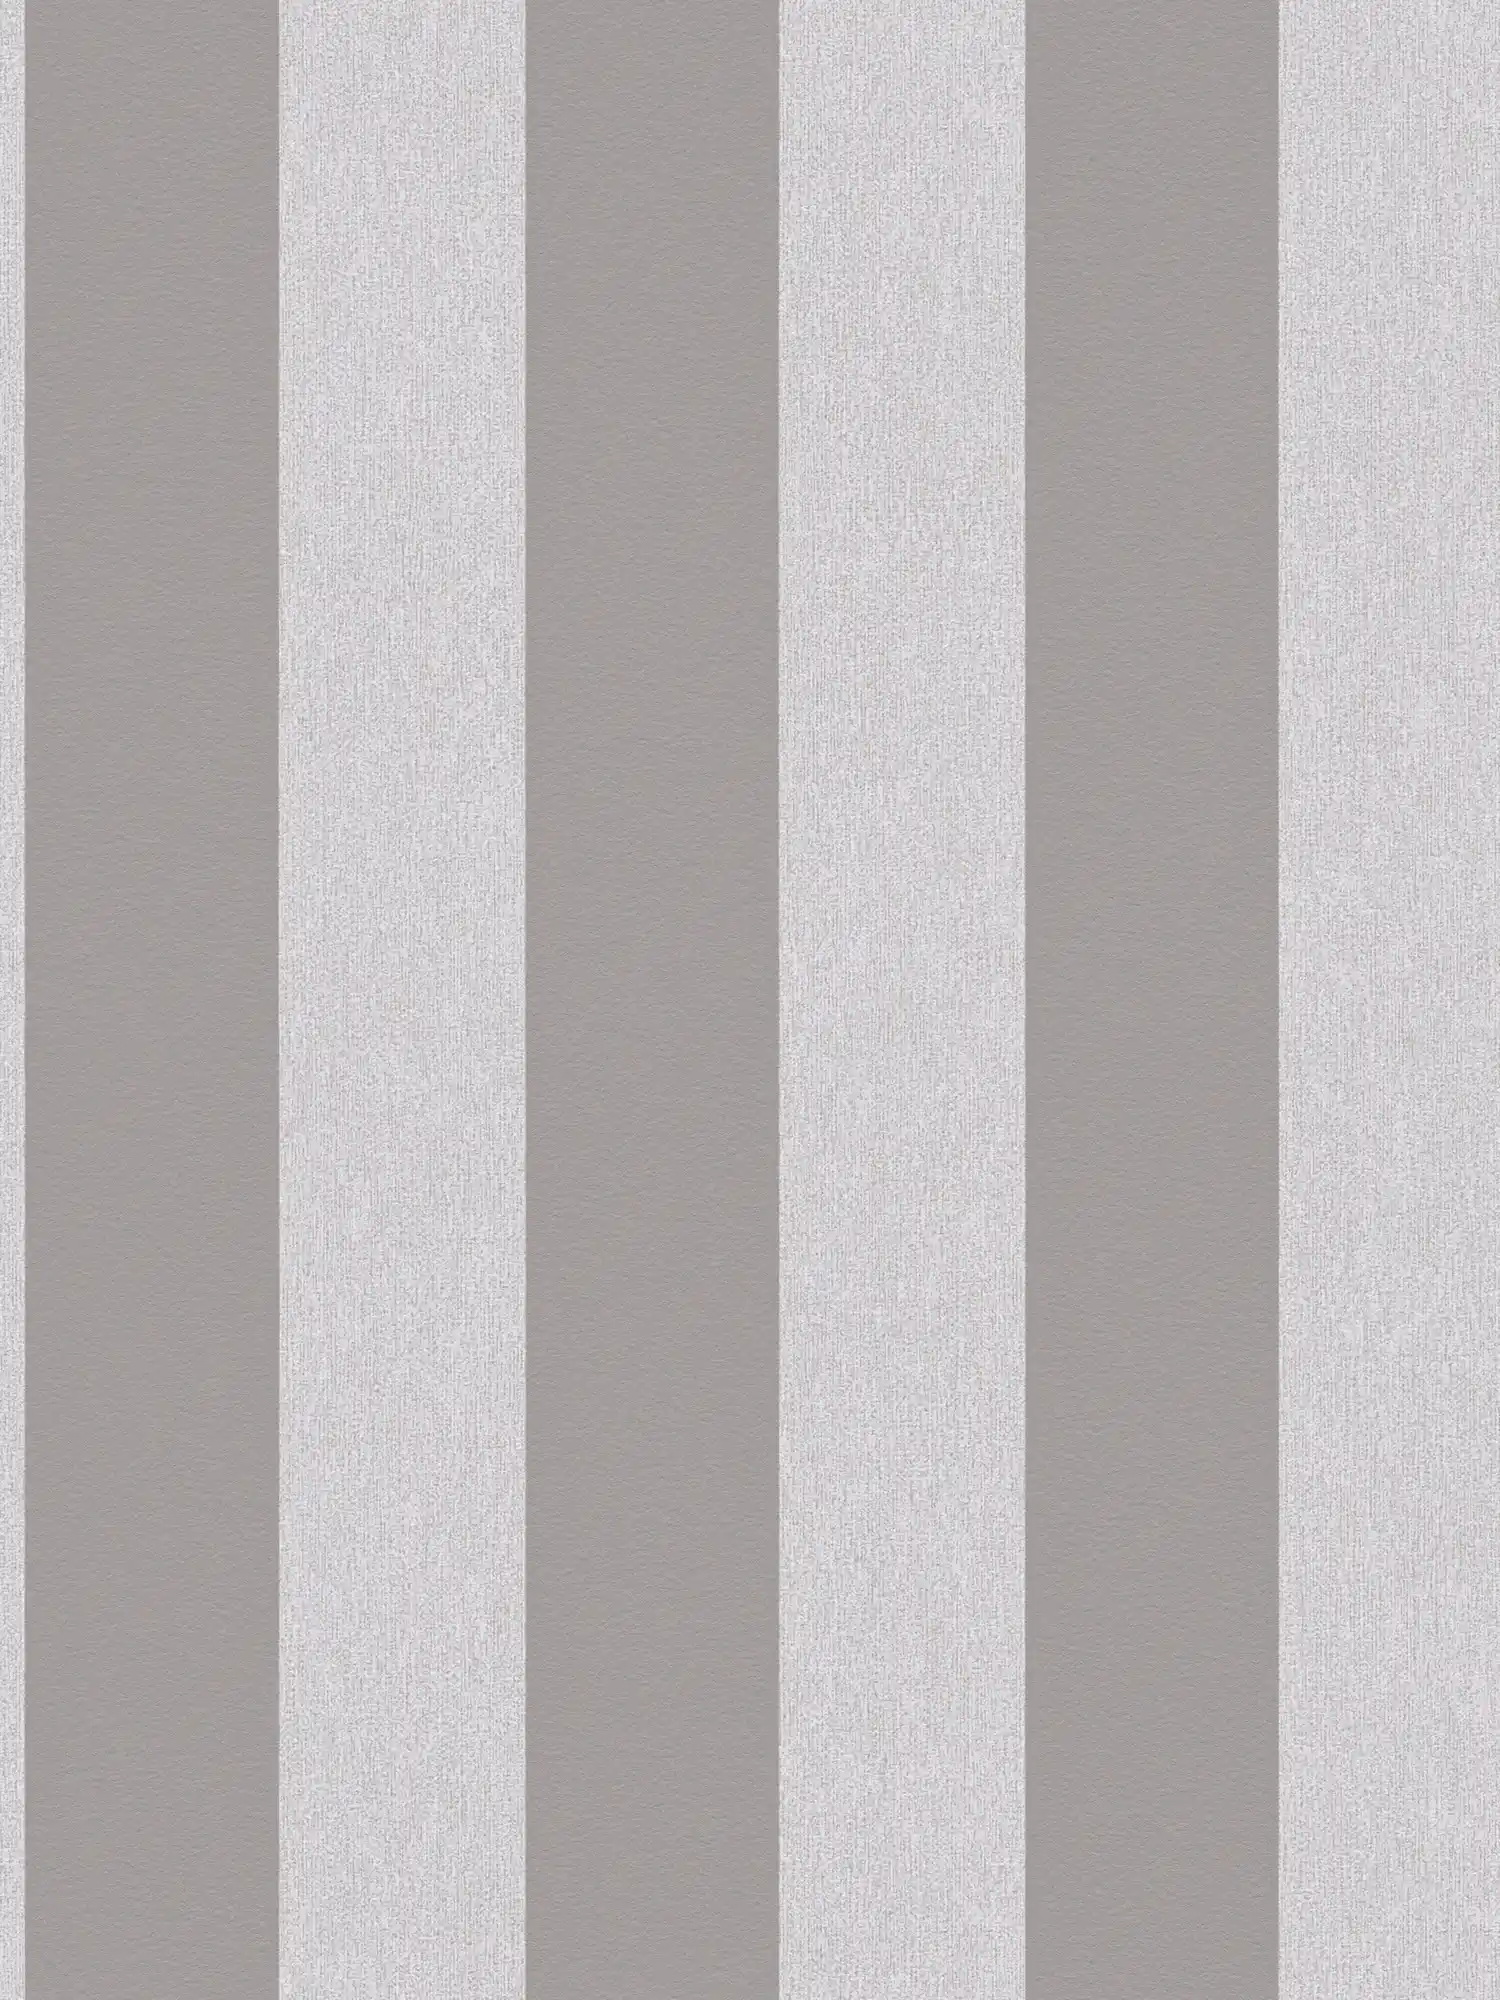 Papier peint à motifs structurés et rayures - gris, gris clair
